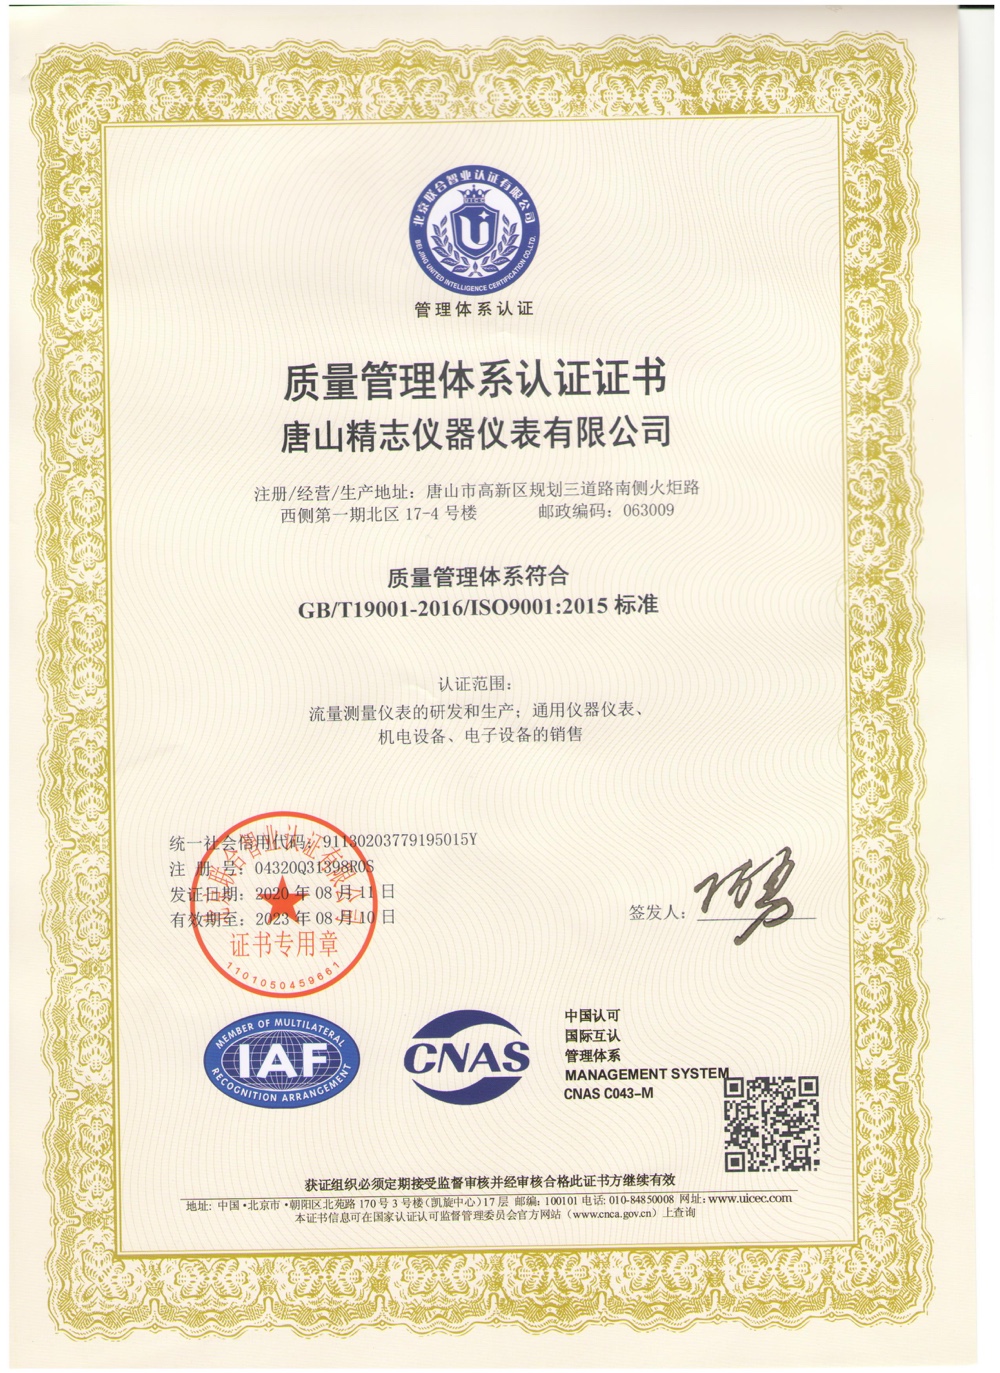 唐山精志仪器仪表有限公司公司资质 ISO9000